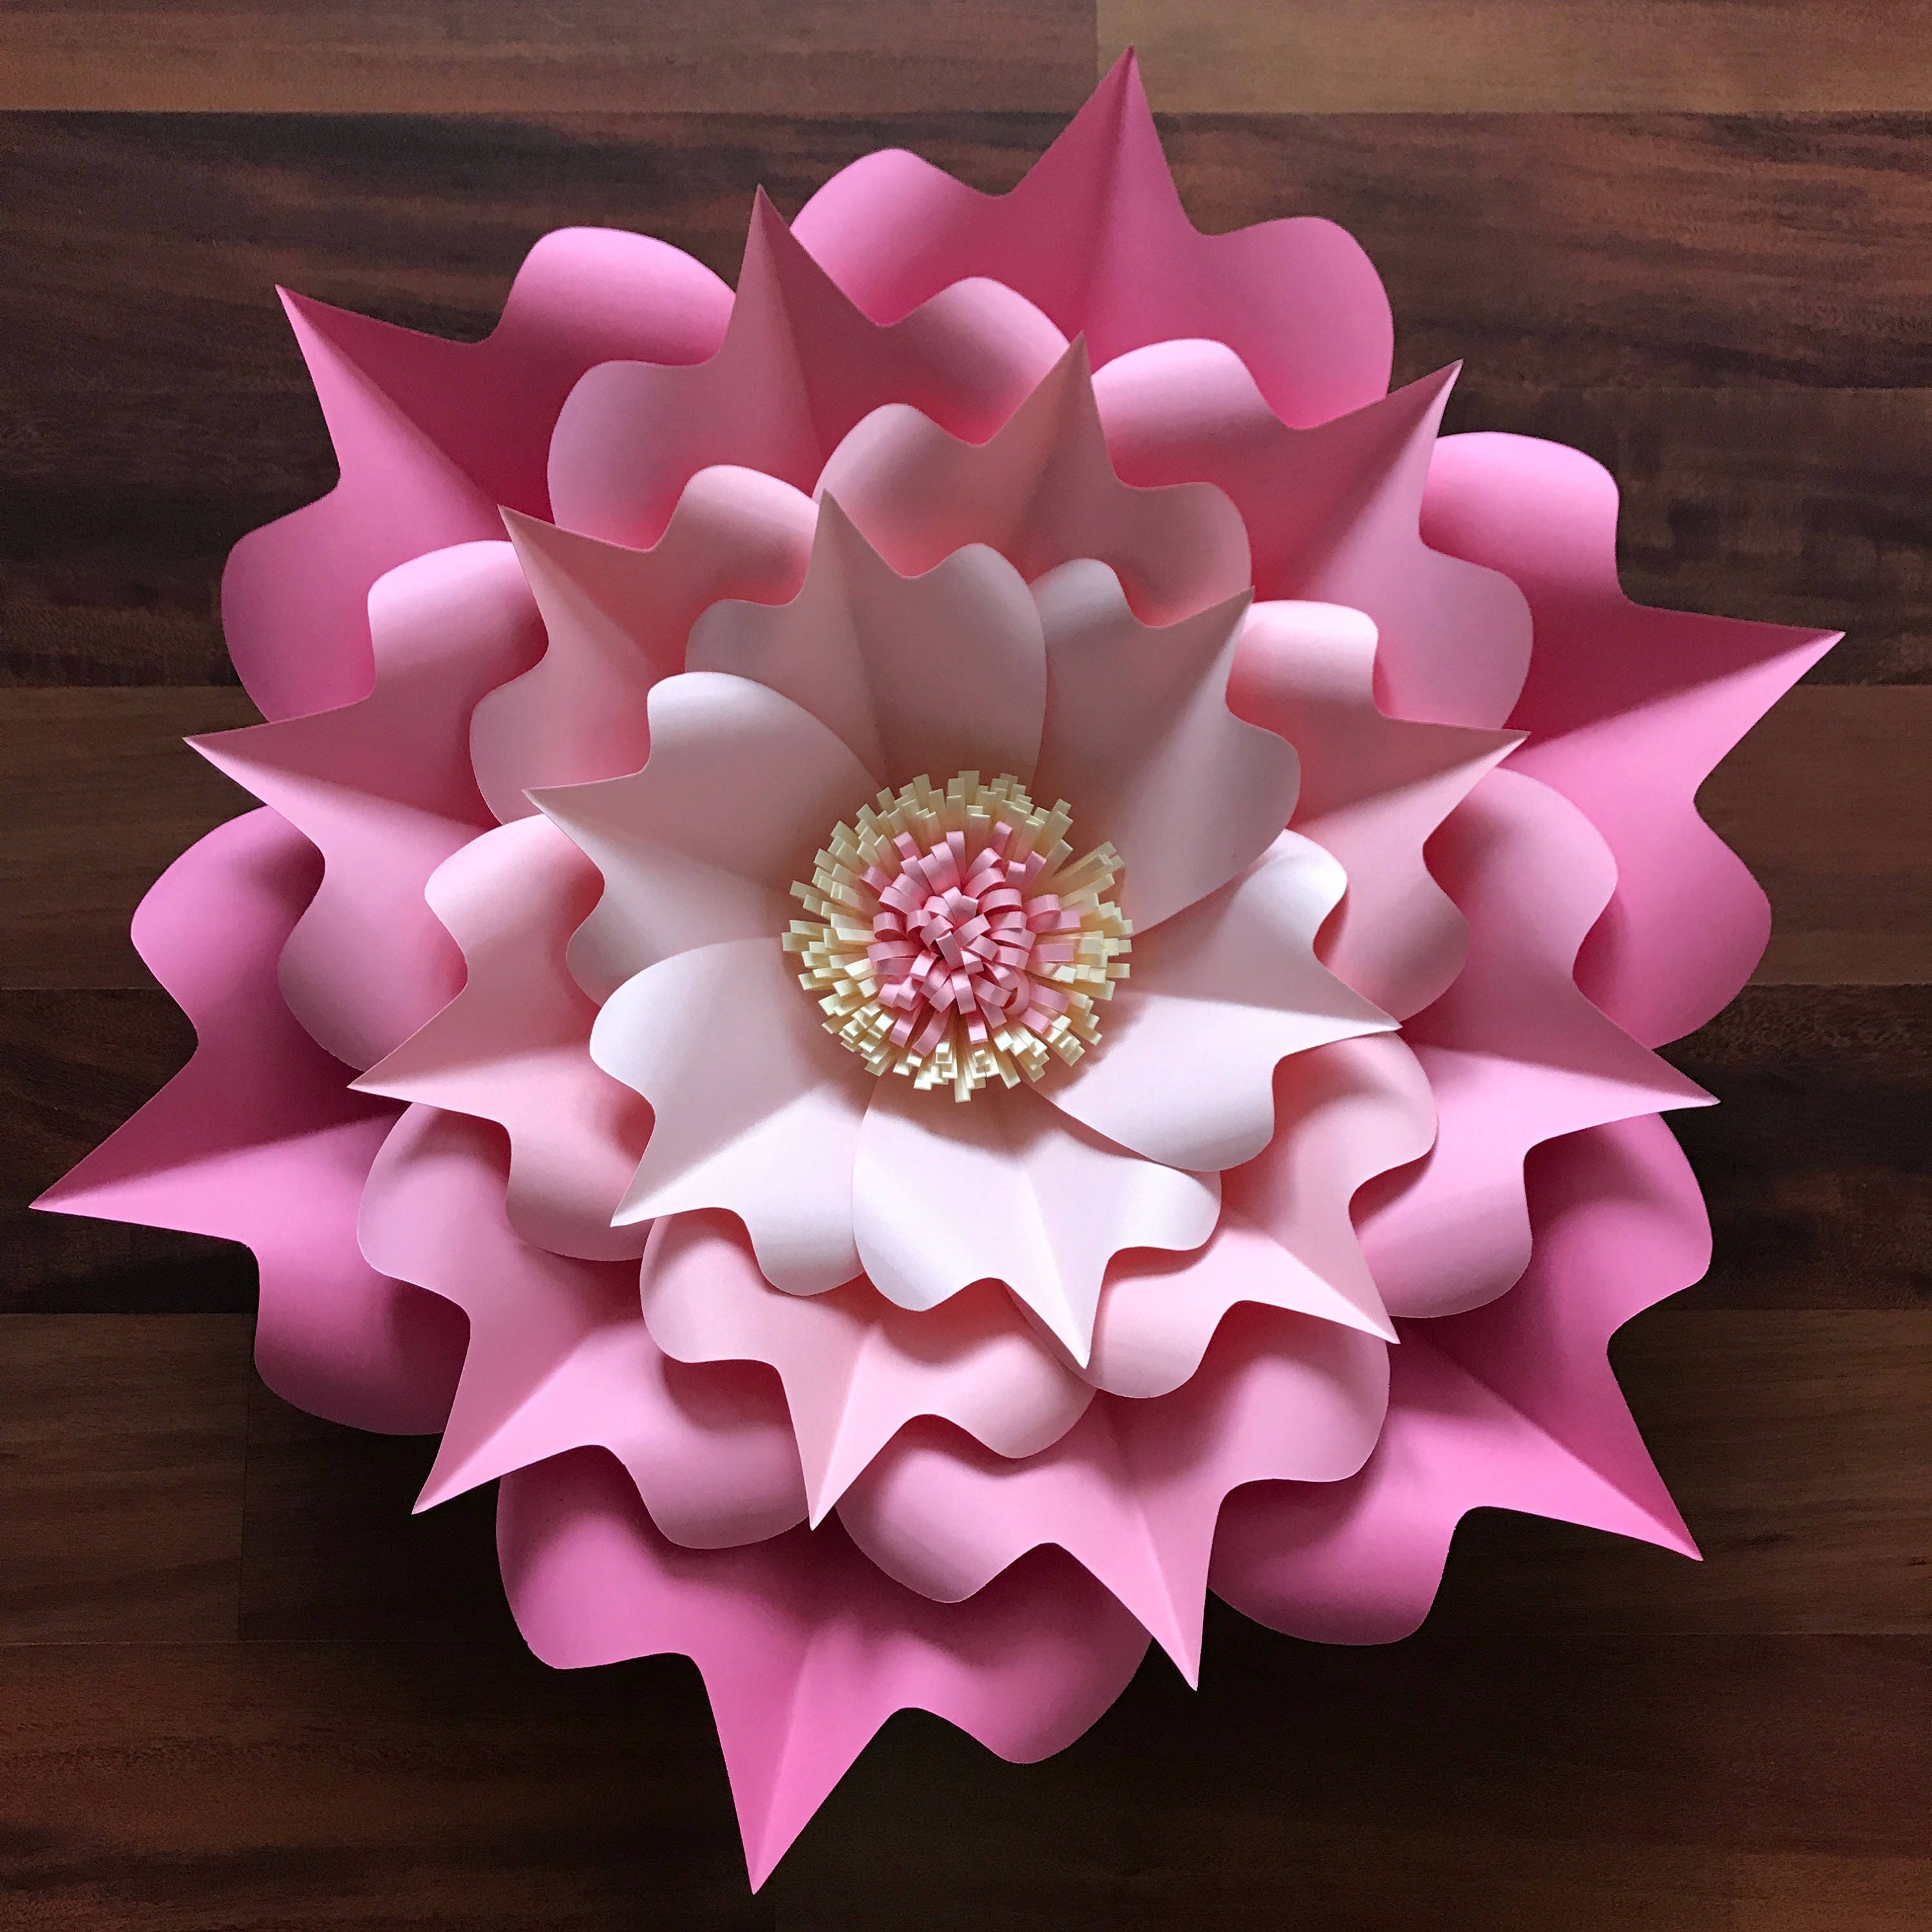 SVG Paper Flower Template DIGITAL Version Original Design by